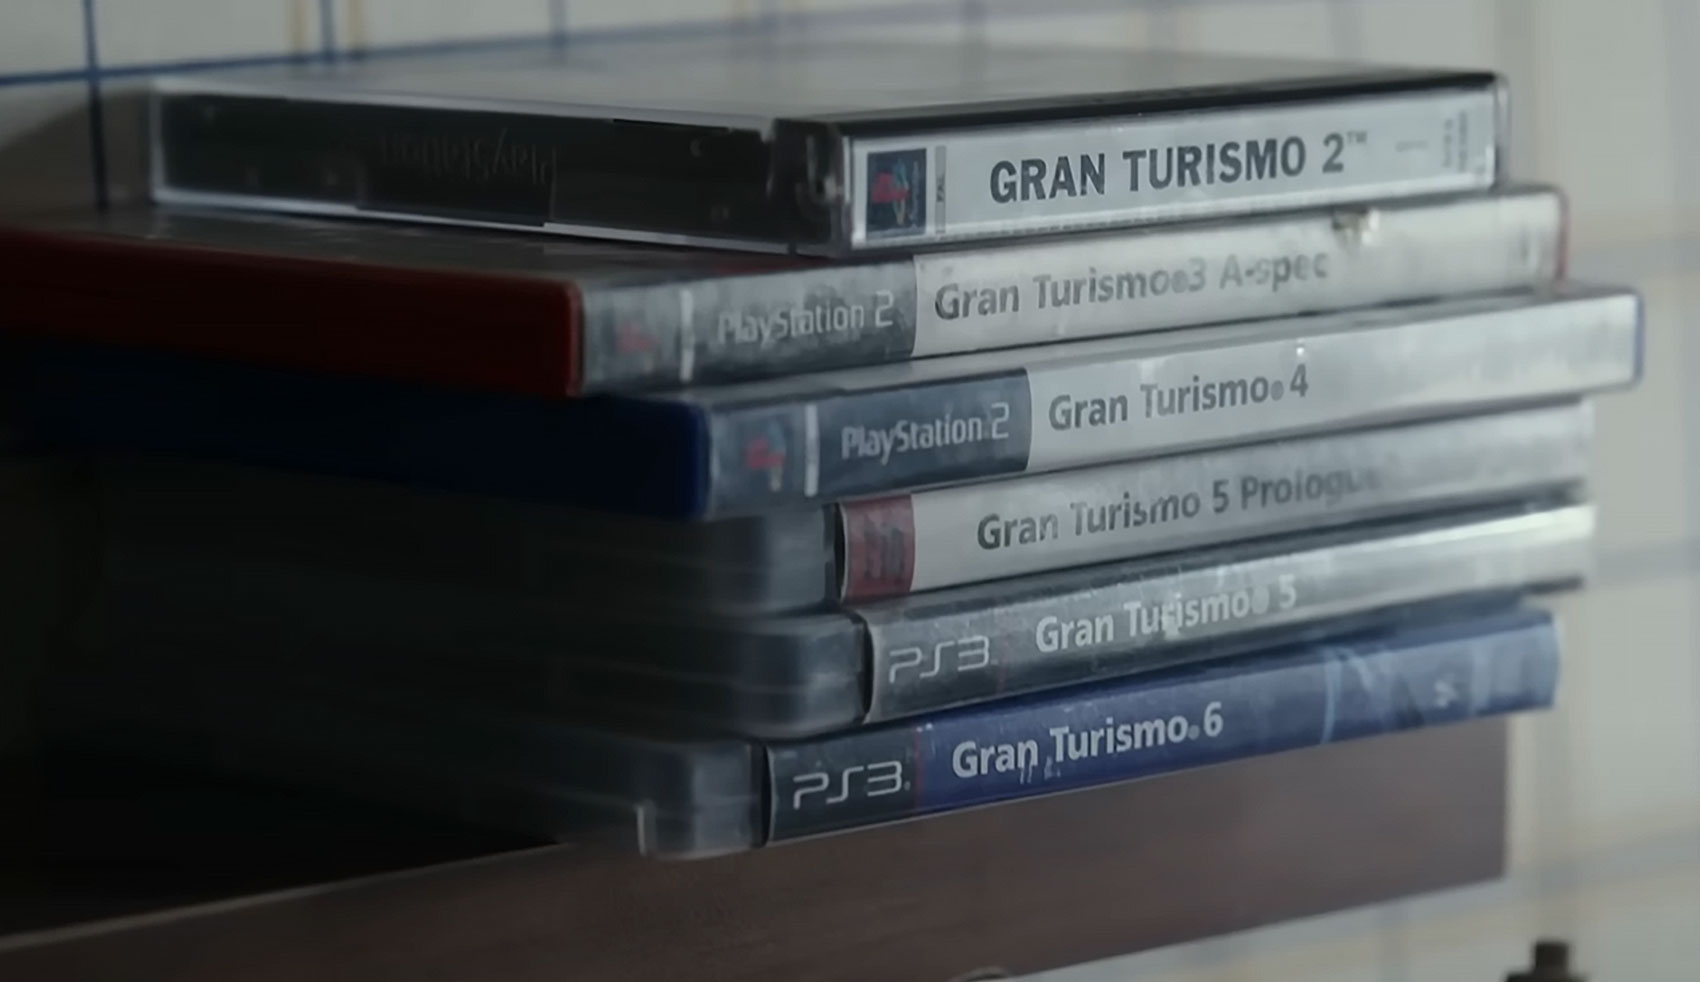 5 referências dos vídeogames reproduzidos no filme de Gran Turismo